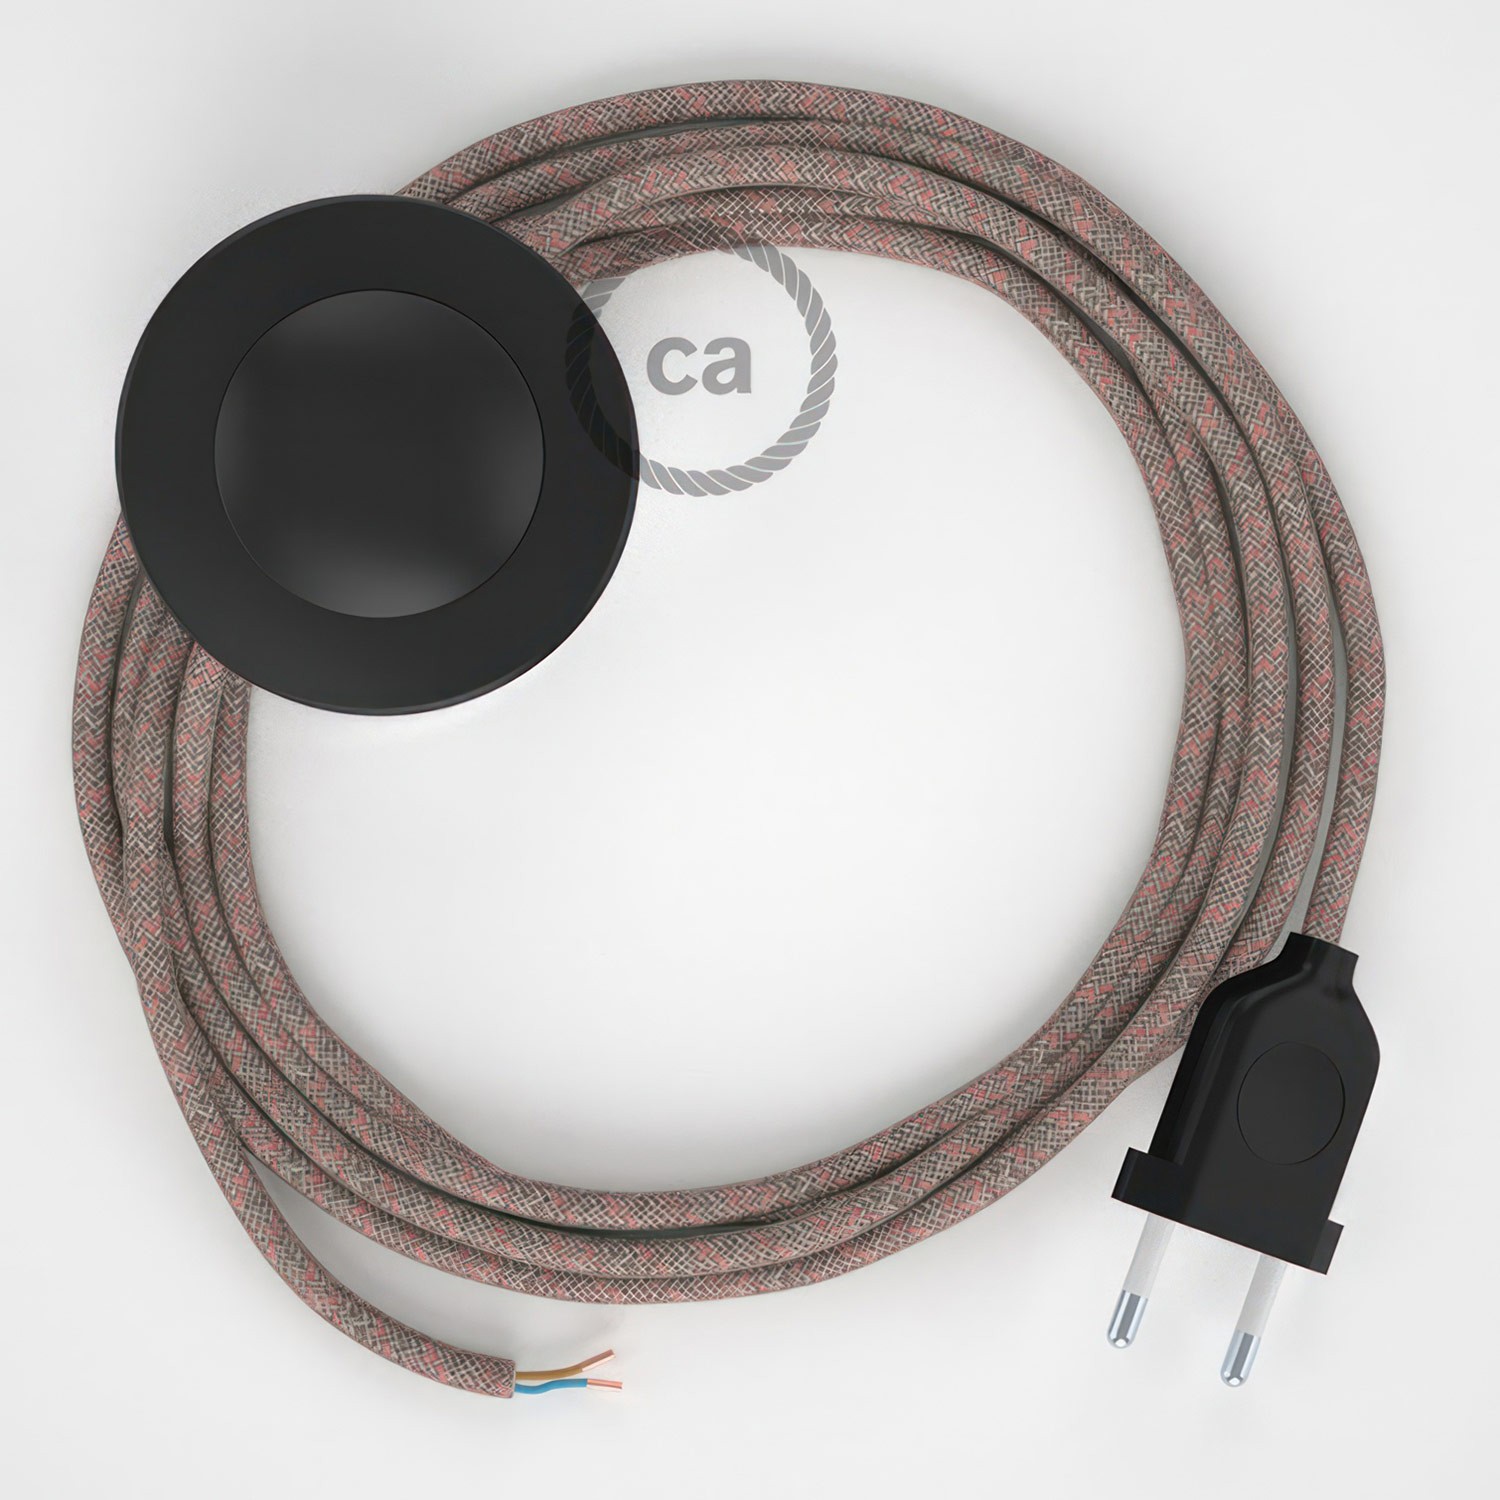 Cableado para lámpara de pie, cable RD61 Rombo Rosa Viejo 3 m. Elige tu el color de la clavija y del interruptor!